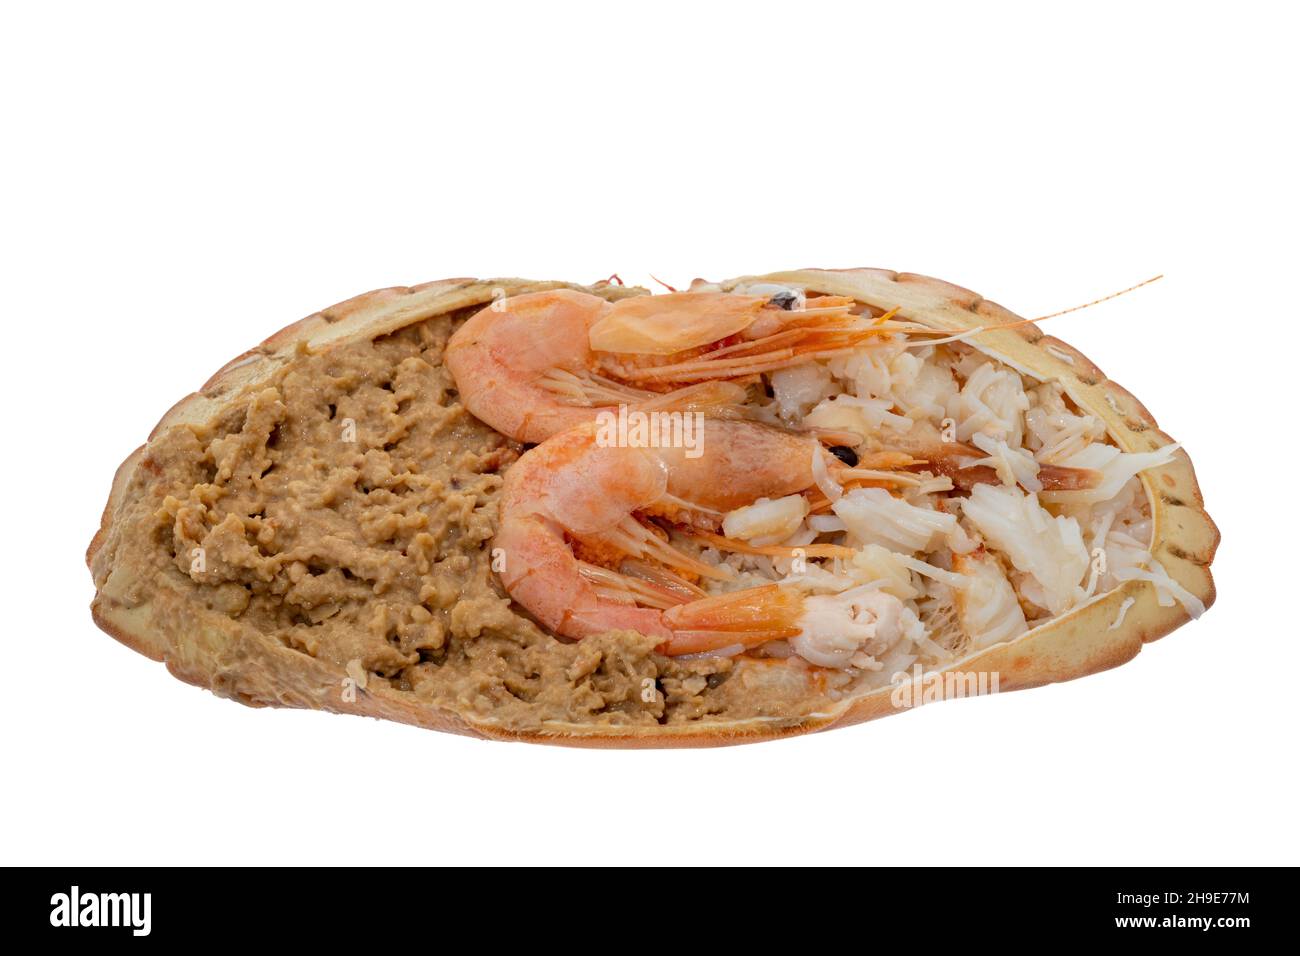 Crabe traditionnel habillé servi dans sa coquille - fond blanc Banque D'Images